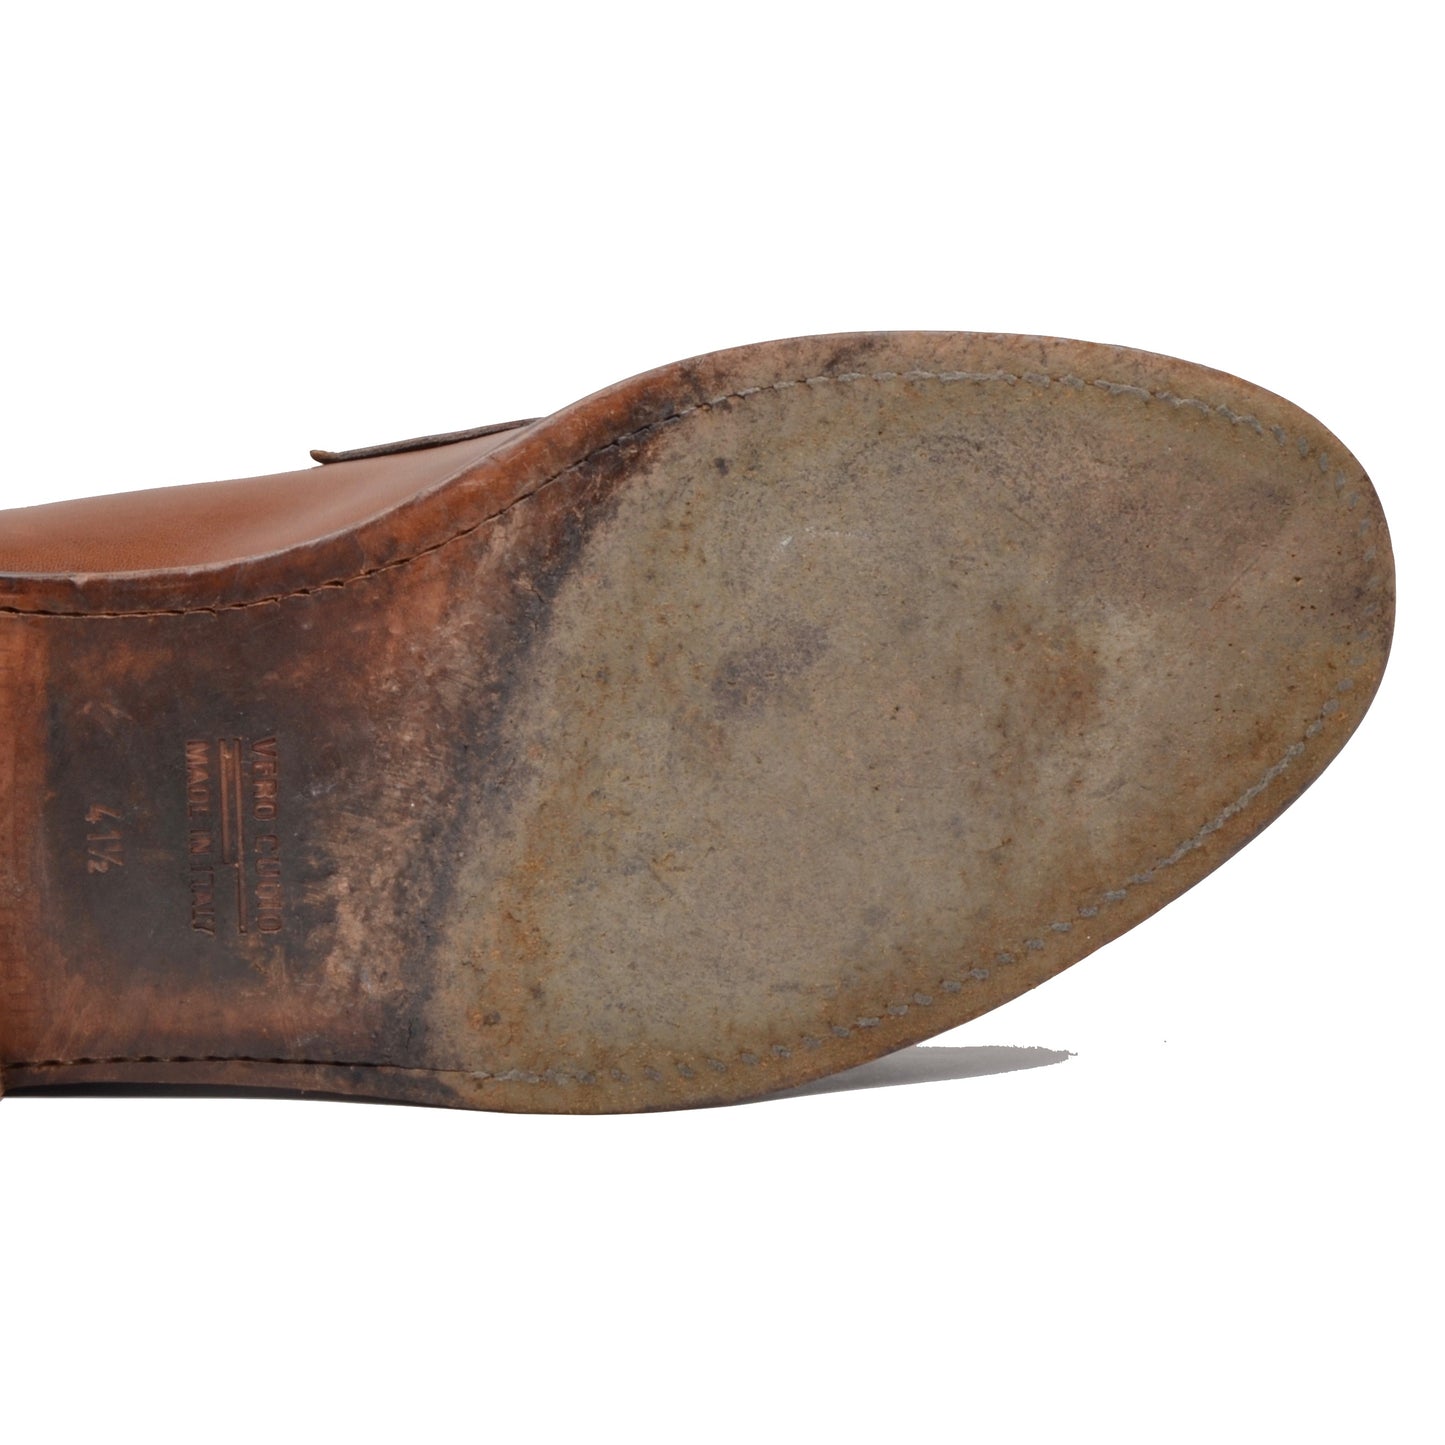 Lendvay &amp; Schwarcz Loafer Schuhe Größe 41,5 - Cognac Braun